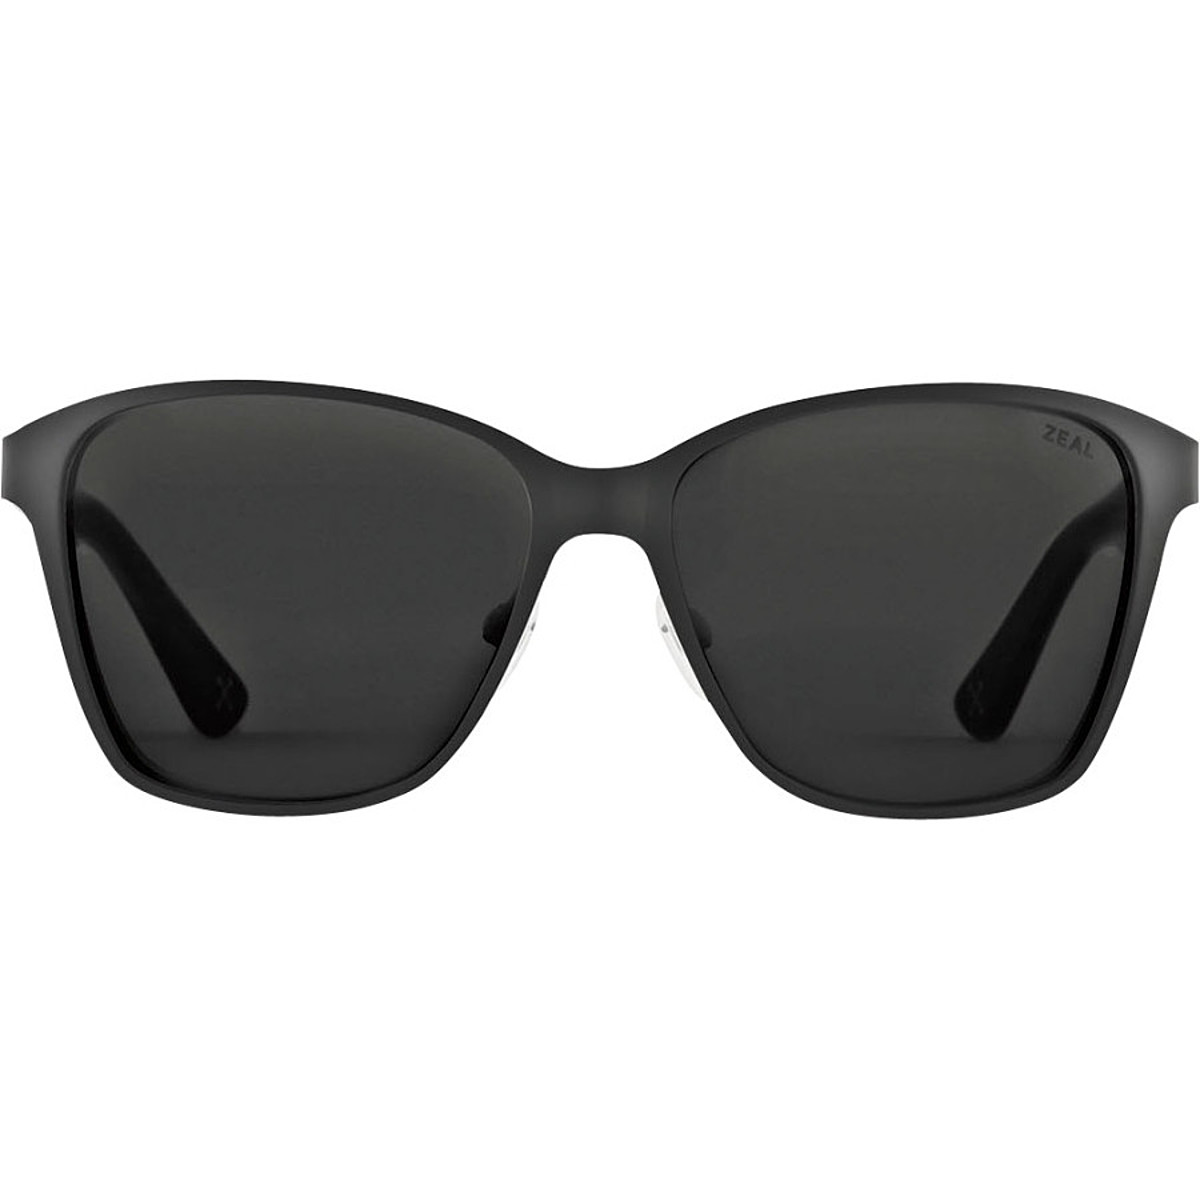 Поляризованные солнцезащитные очки Zeal Laurel Canyon Zeal